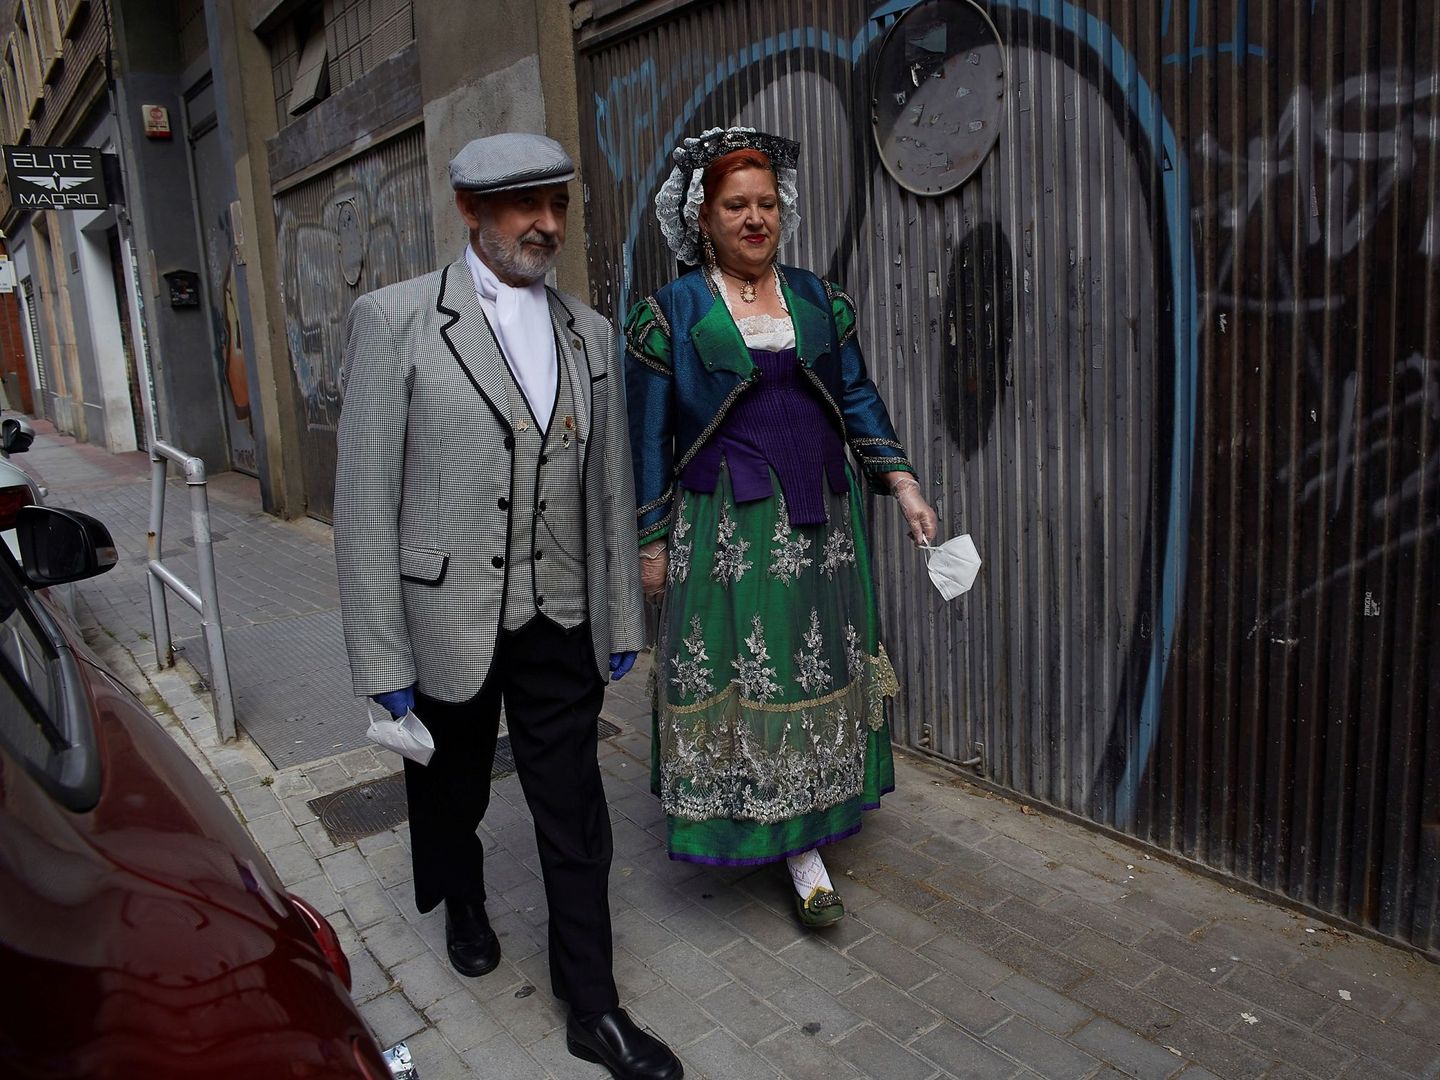 Una pareja camina vestida de chulapo y goyesca para celebrar San Isidro. (EFE/A. Márquez)